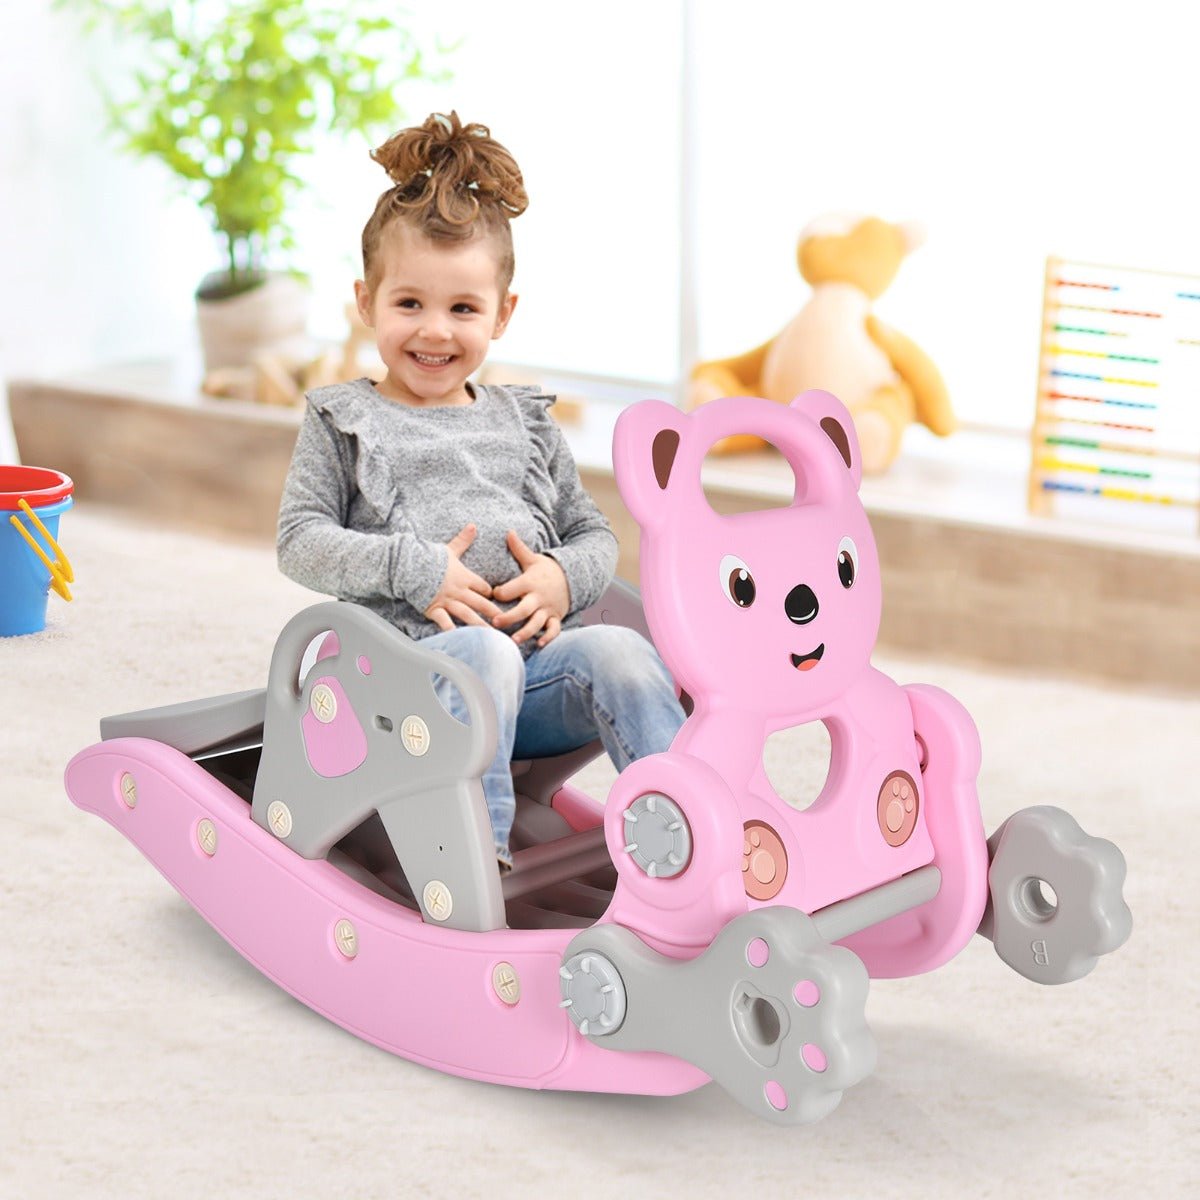 4-in-1 Rocking Horse and Slide Set for Kids Pink - Kids Mega Mart